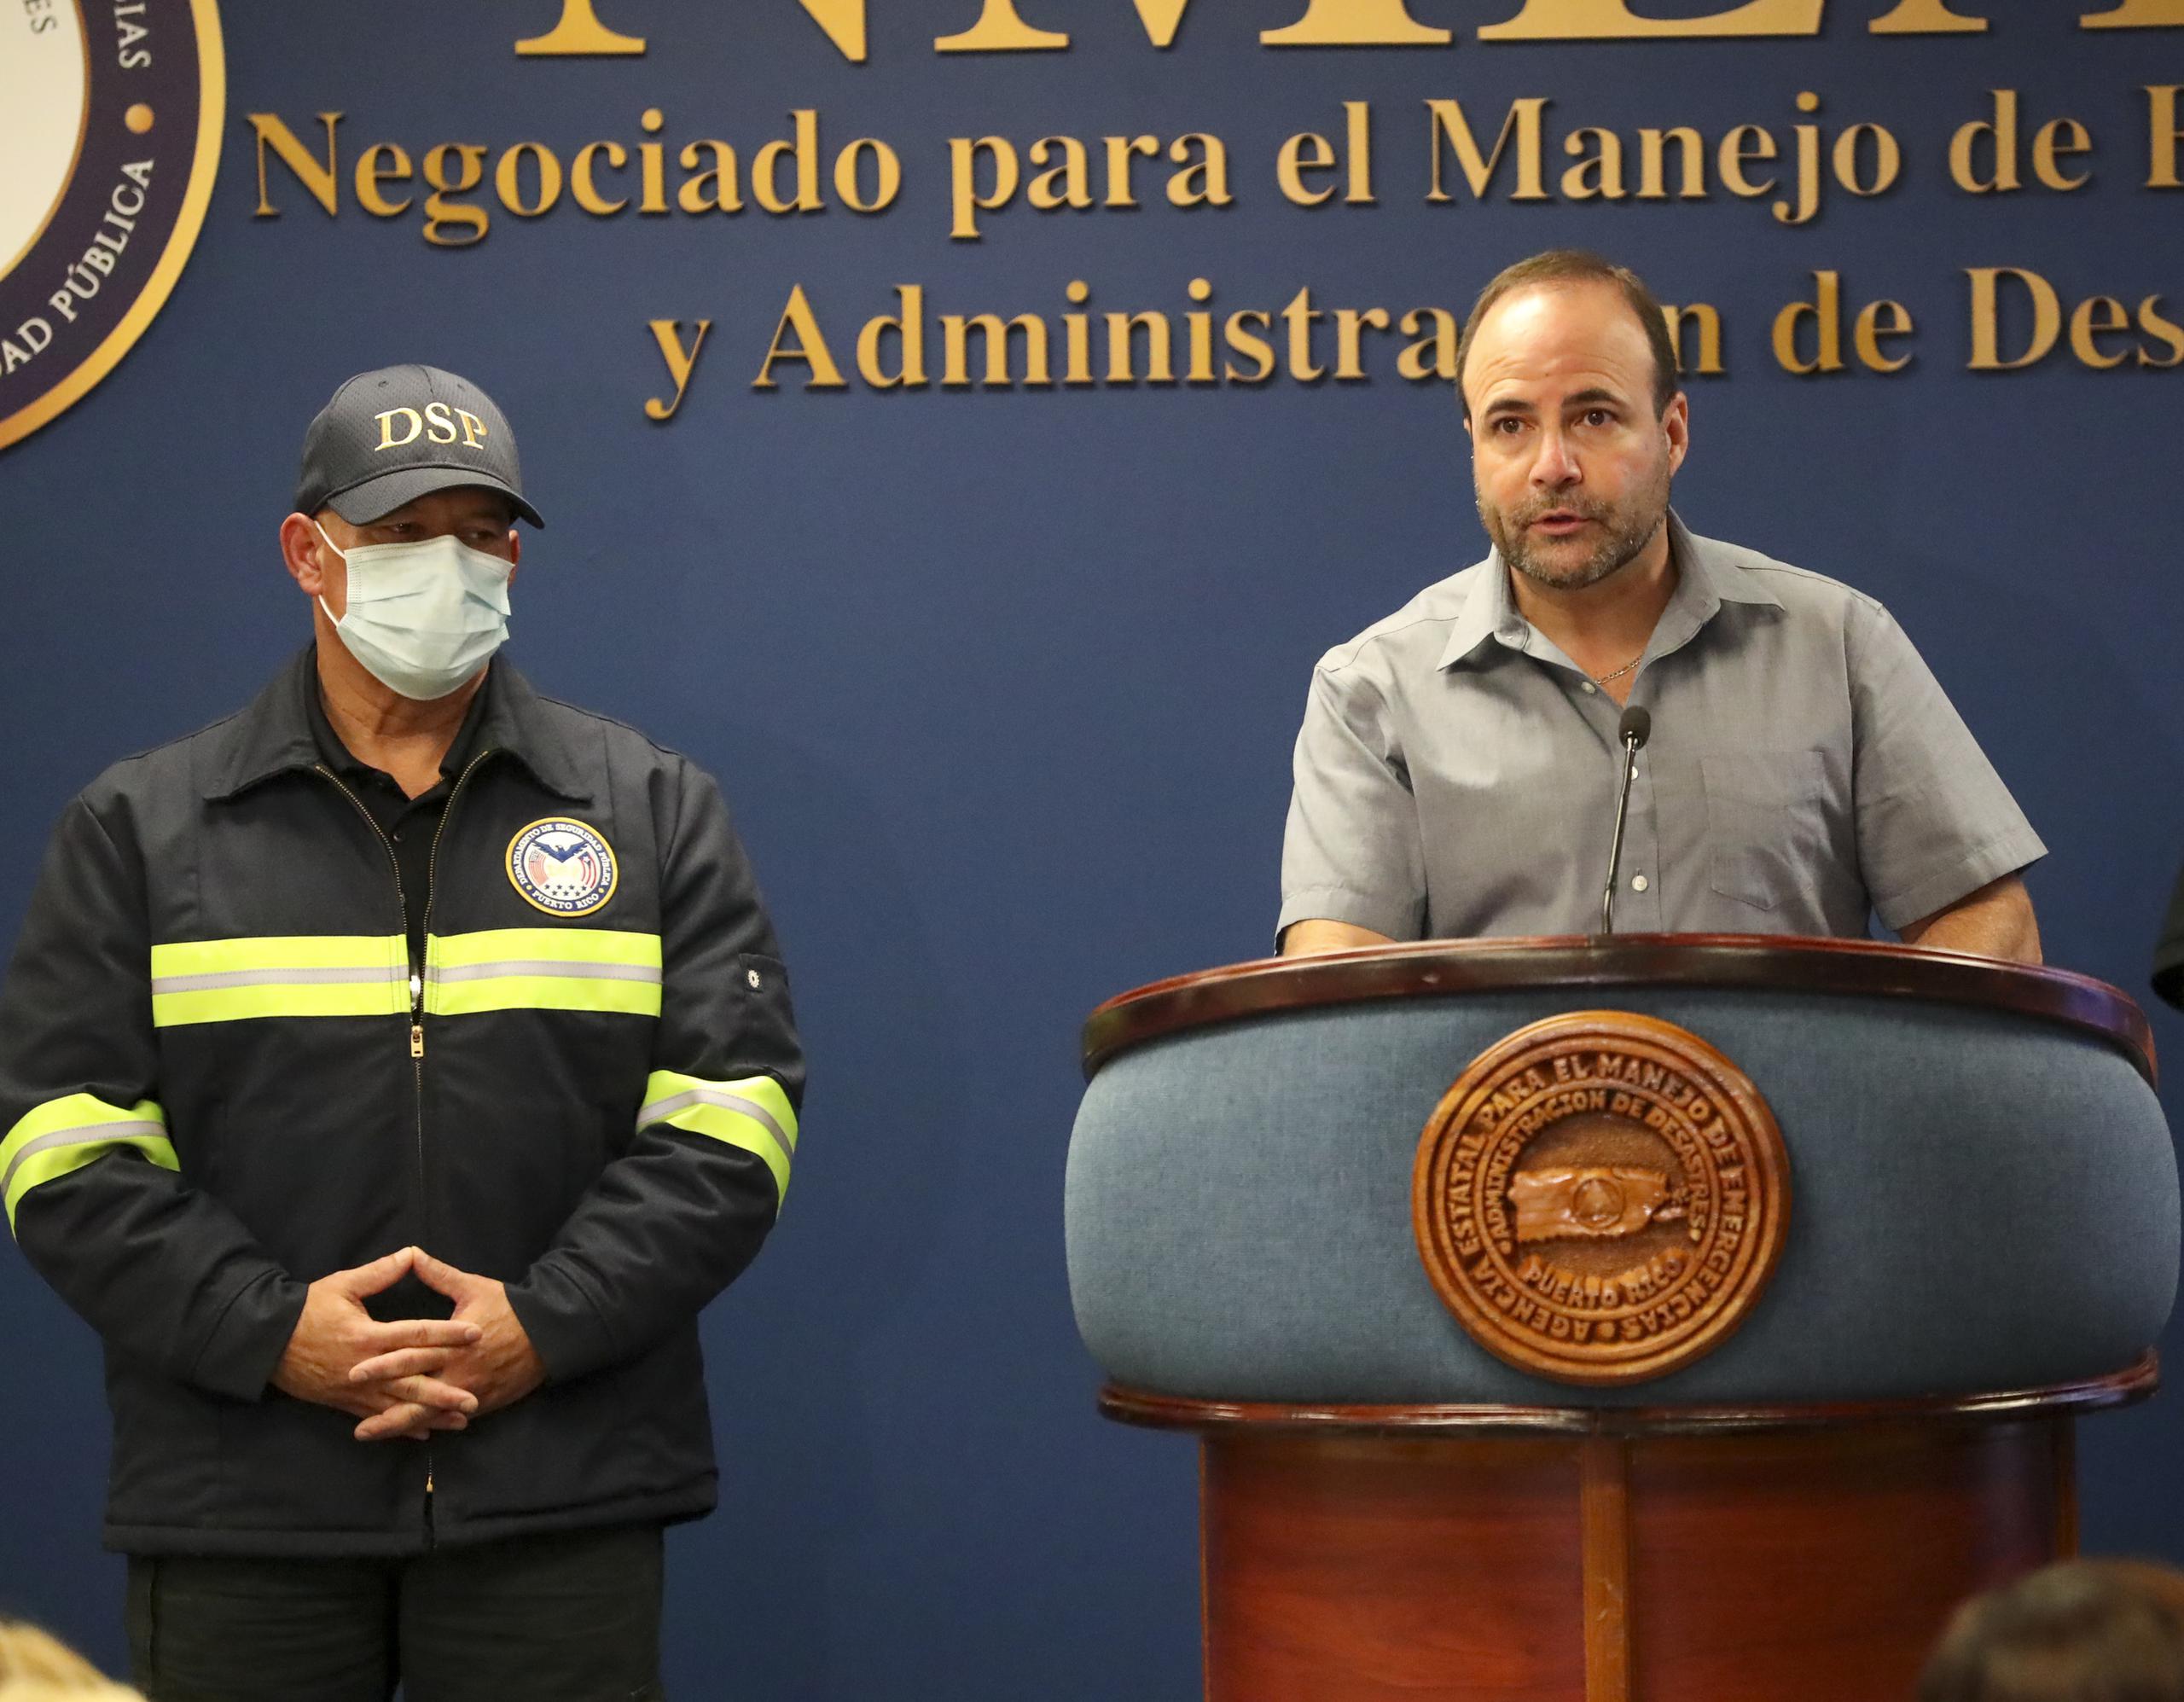 El secretario de Estado, Elmer Roman, junto a Pedro Janer, secretario de Seguridad Pública, durante la conferencia de prensa en Manejo de Emergencias.